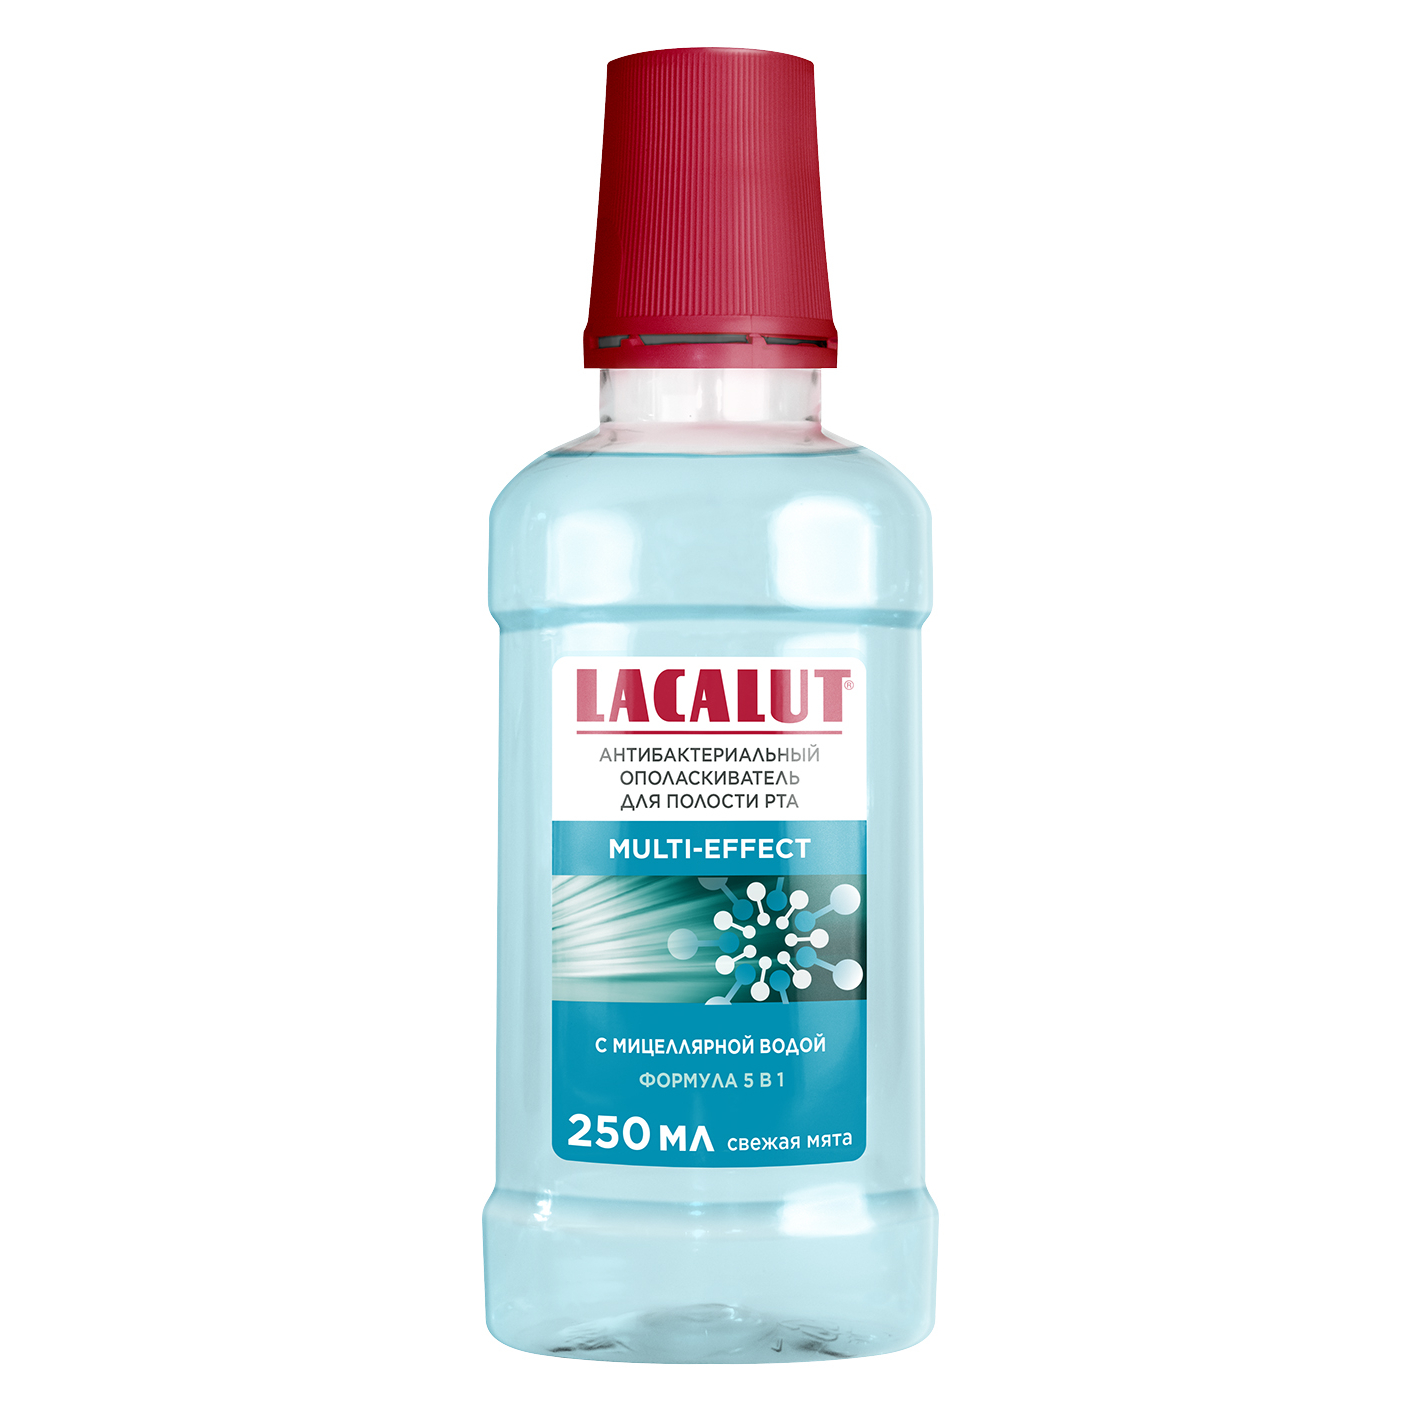 Ополаскиватель для полости рта Lacalut multi-effect антибактериальный 250 мл